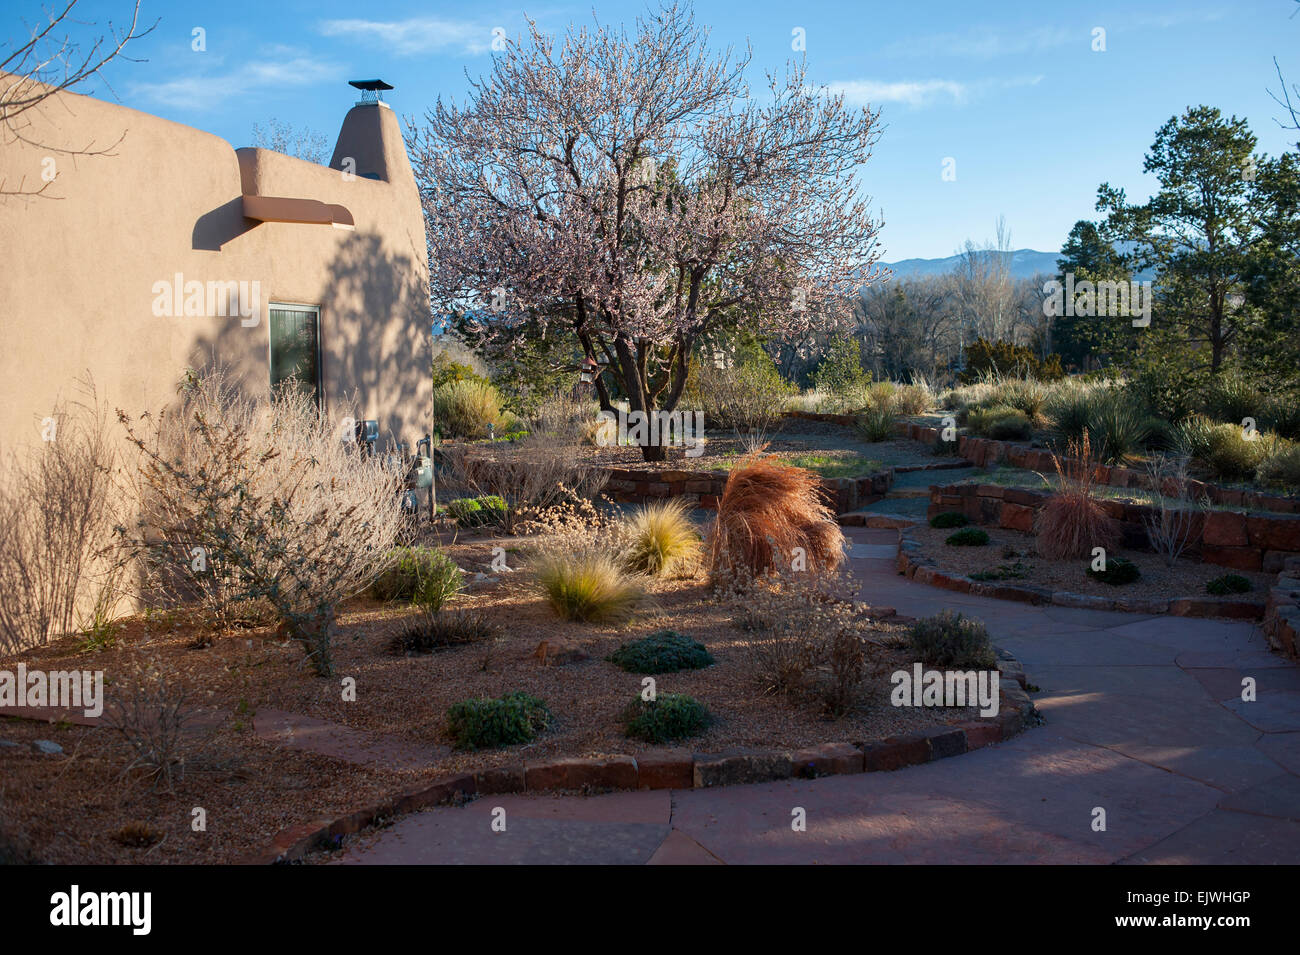 USA New Mexico NM dessert garden along an adobe style hacienda house home in the spring Stock Photo